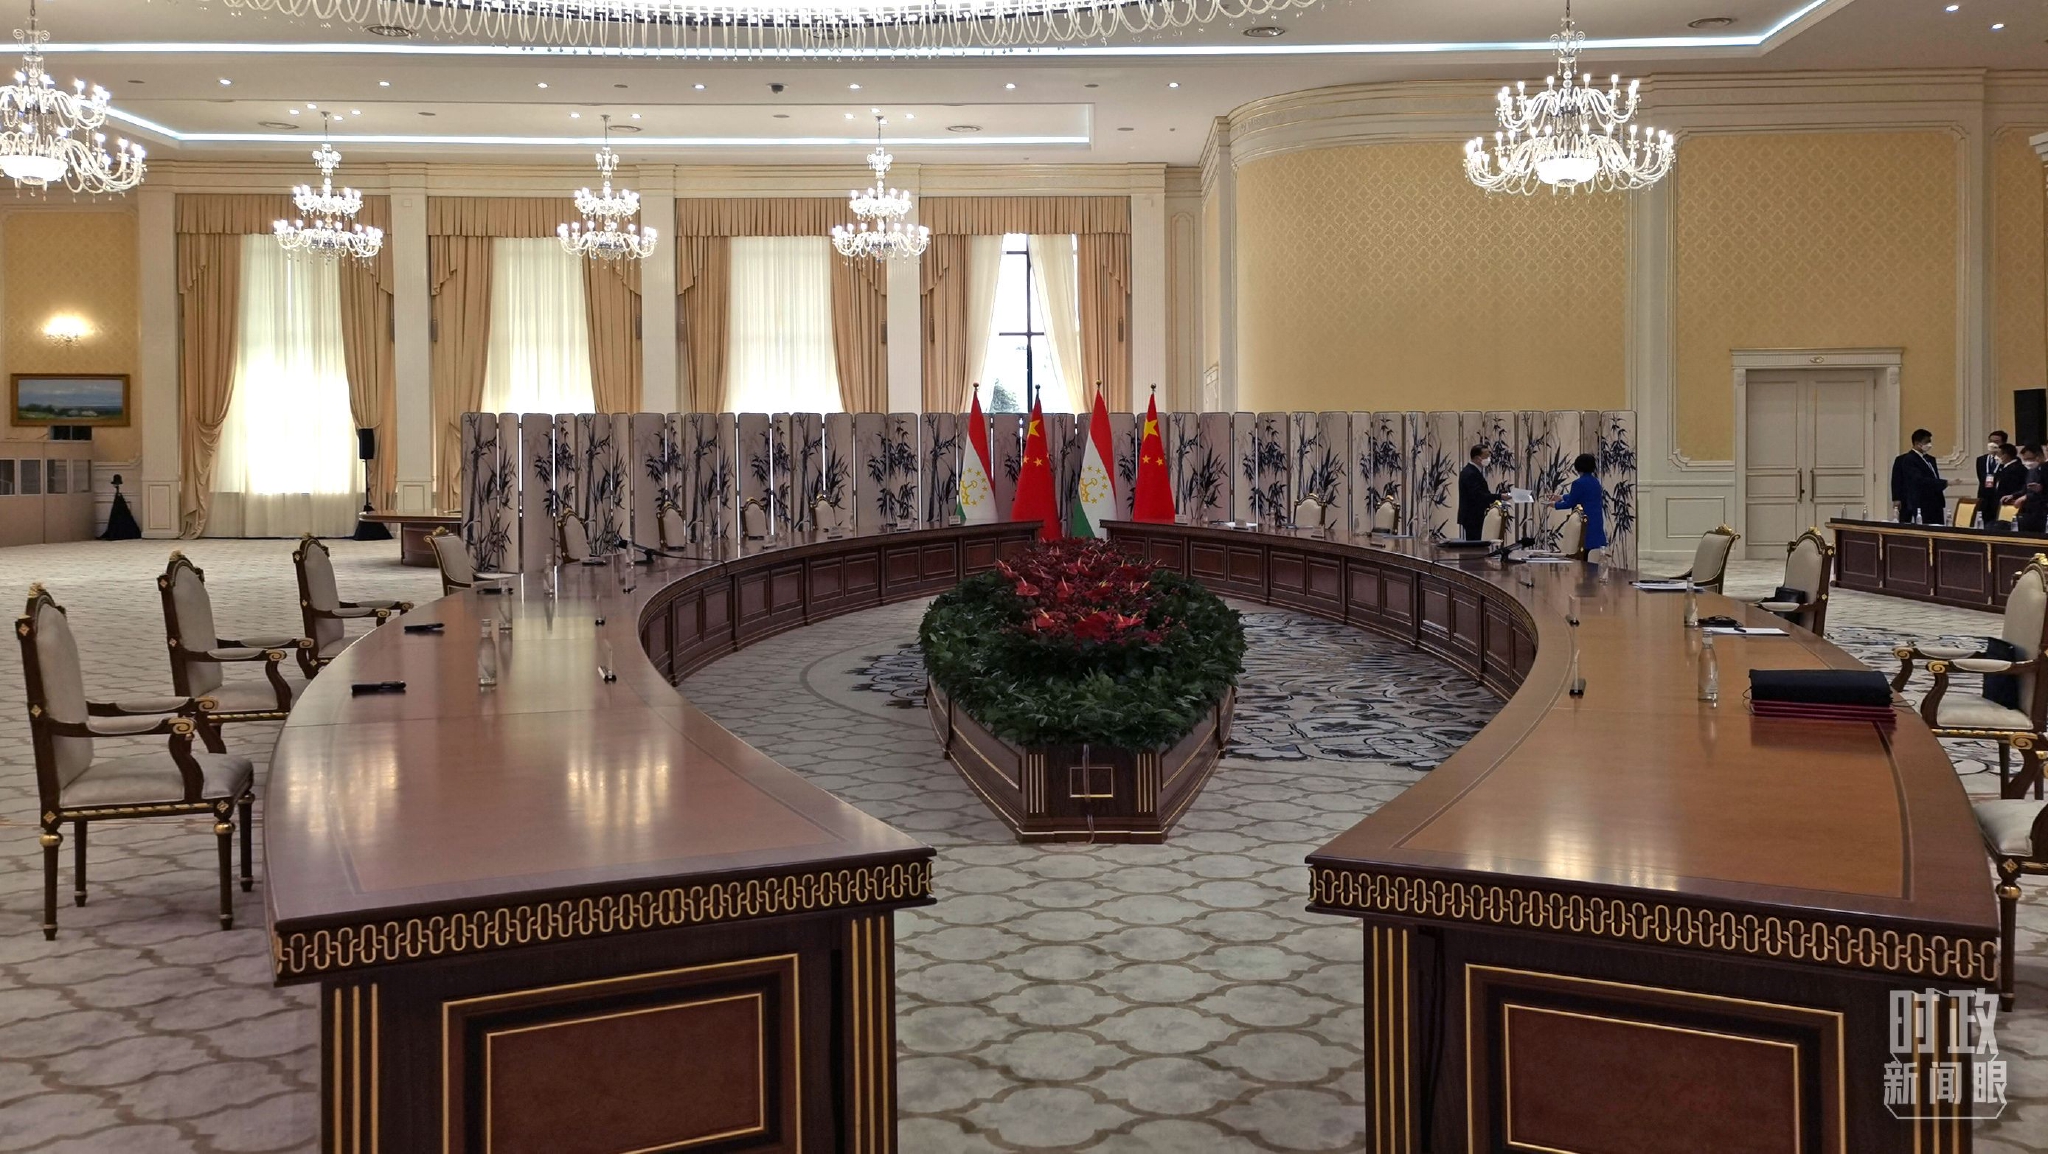 △中国、塔吉克斯坦两国元首会见在这里举行。（总台央视记者马超拍摄）